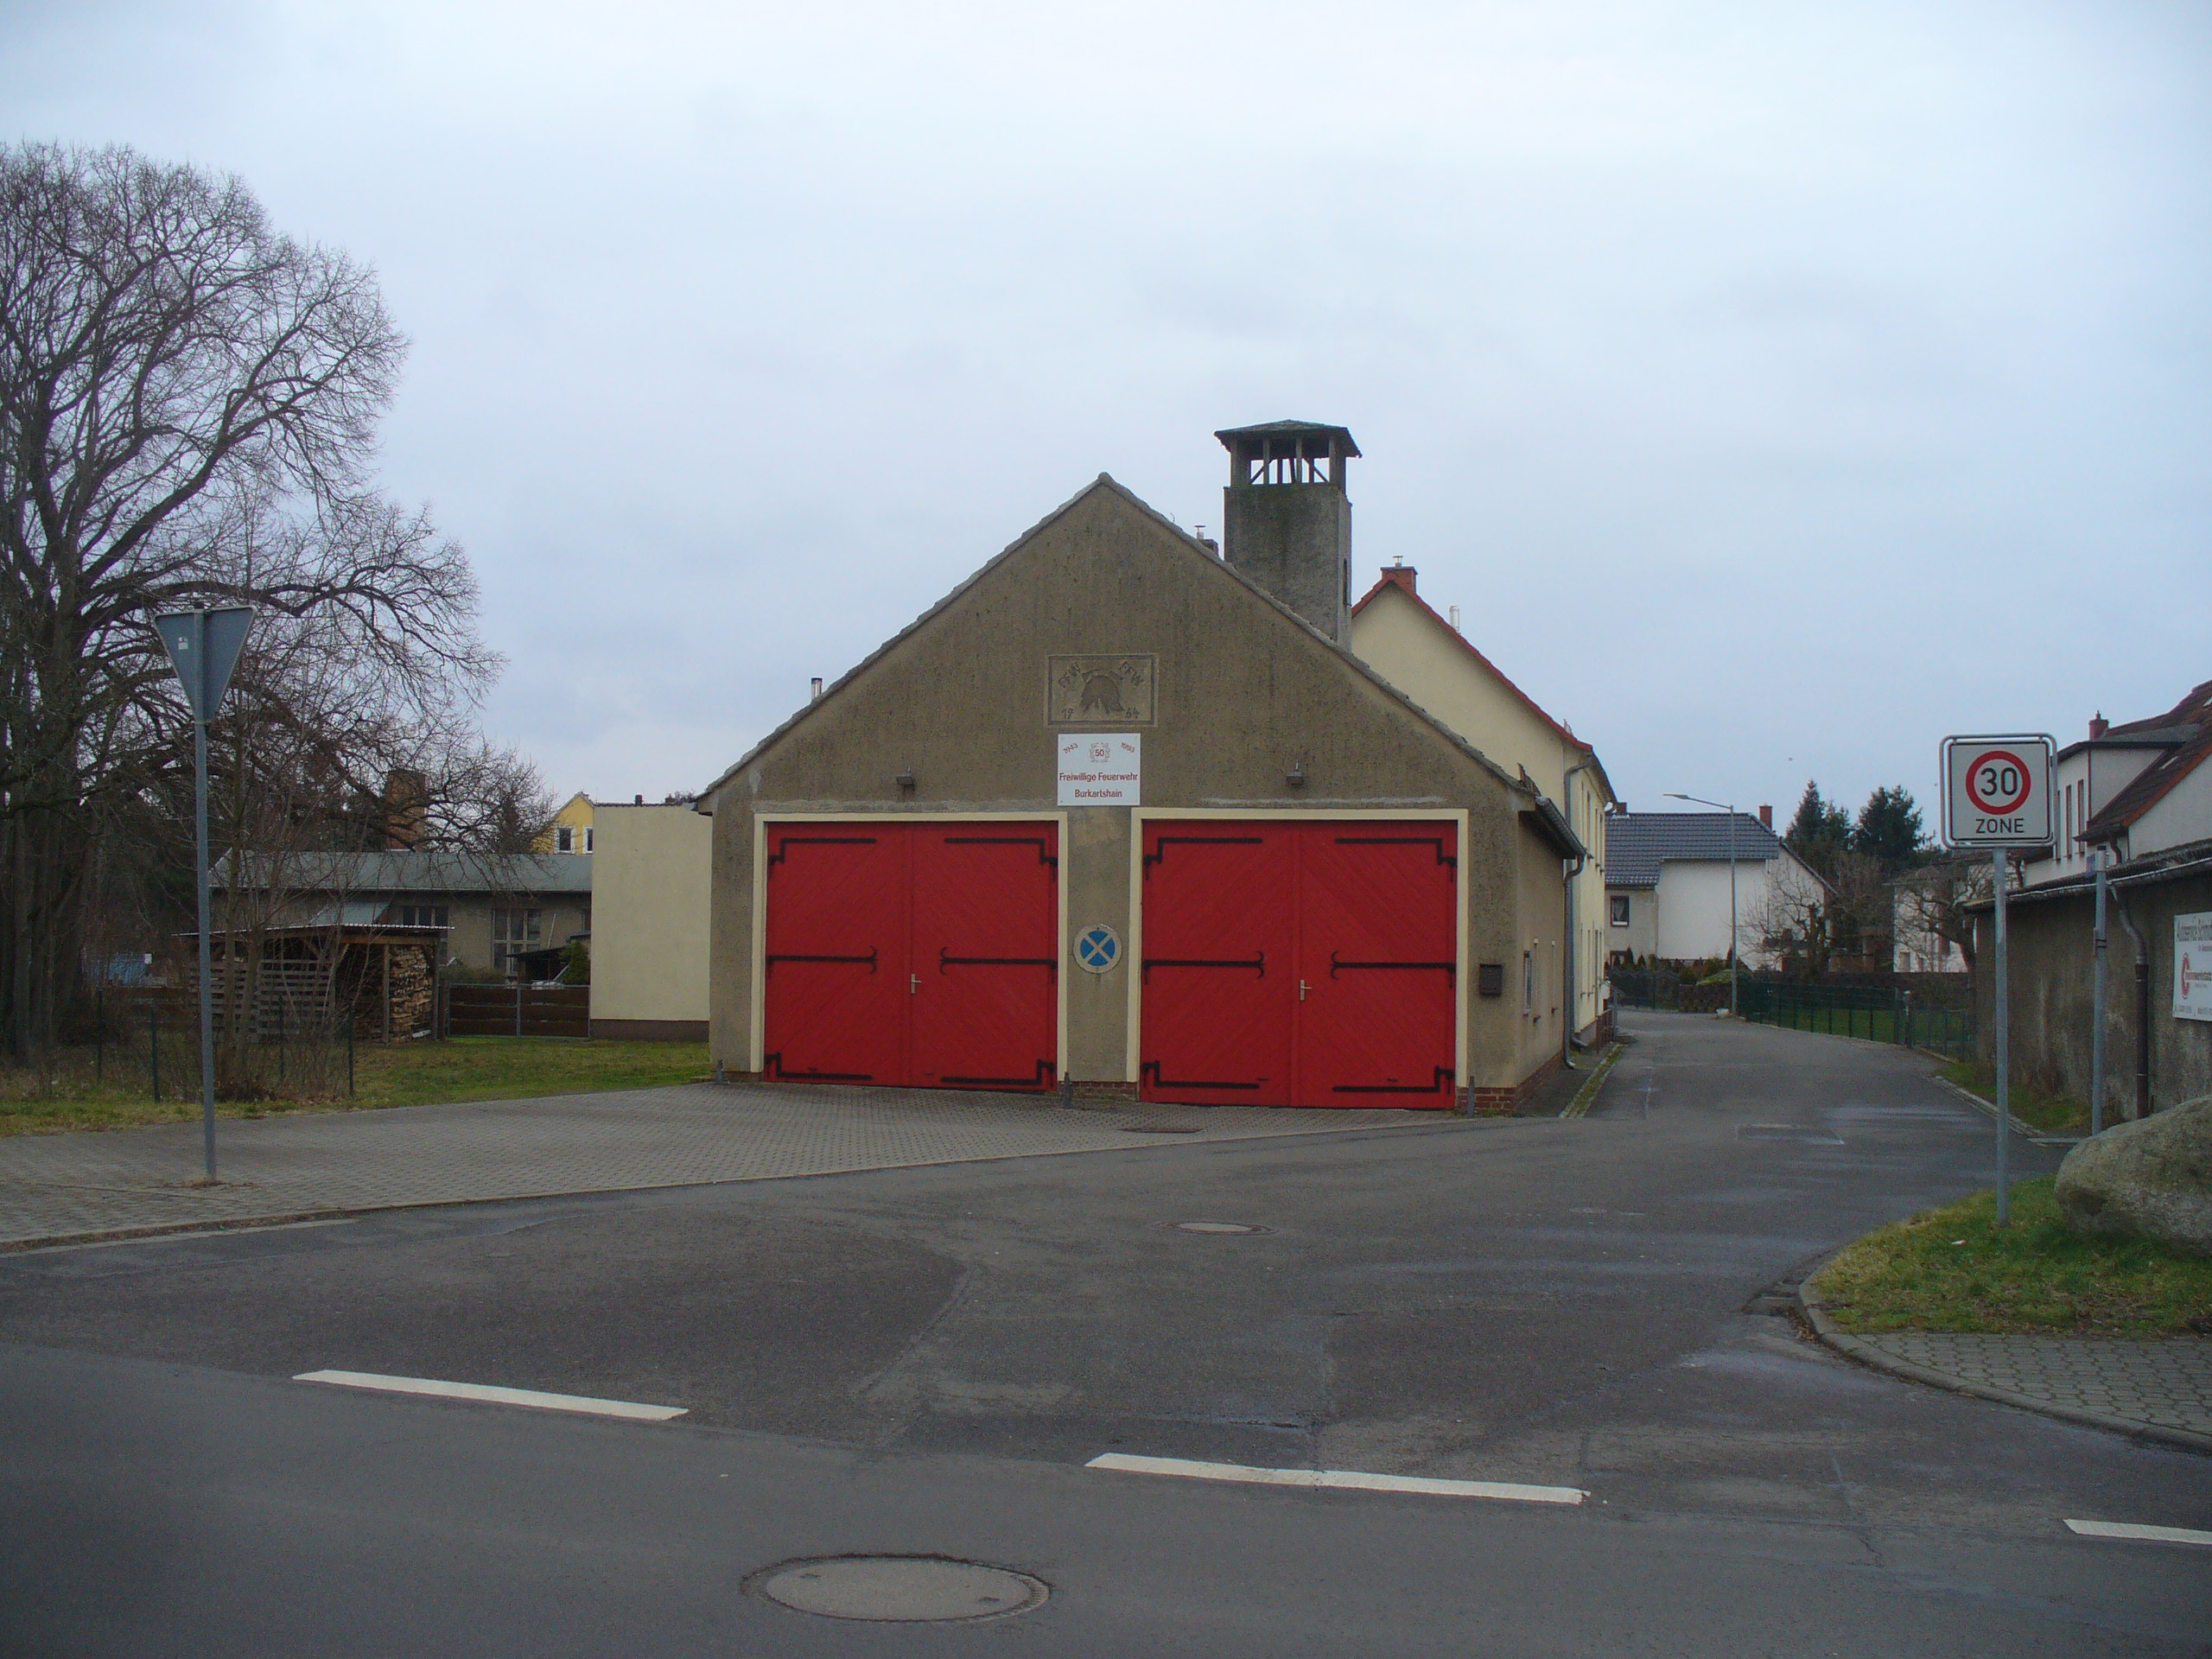 Multiples Dorfgemeinschafts-Feuerwehr-Vereinshaus für Burkartshain geplant